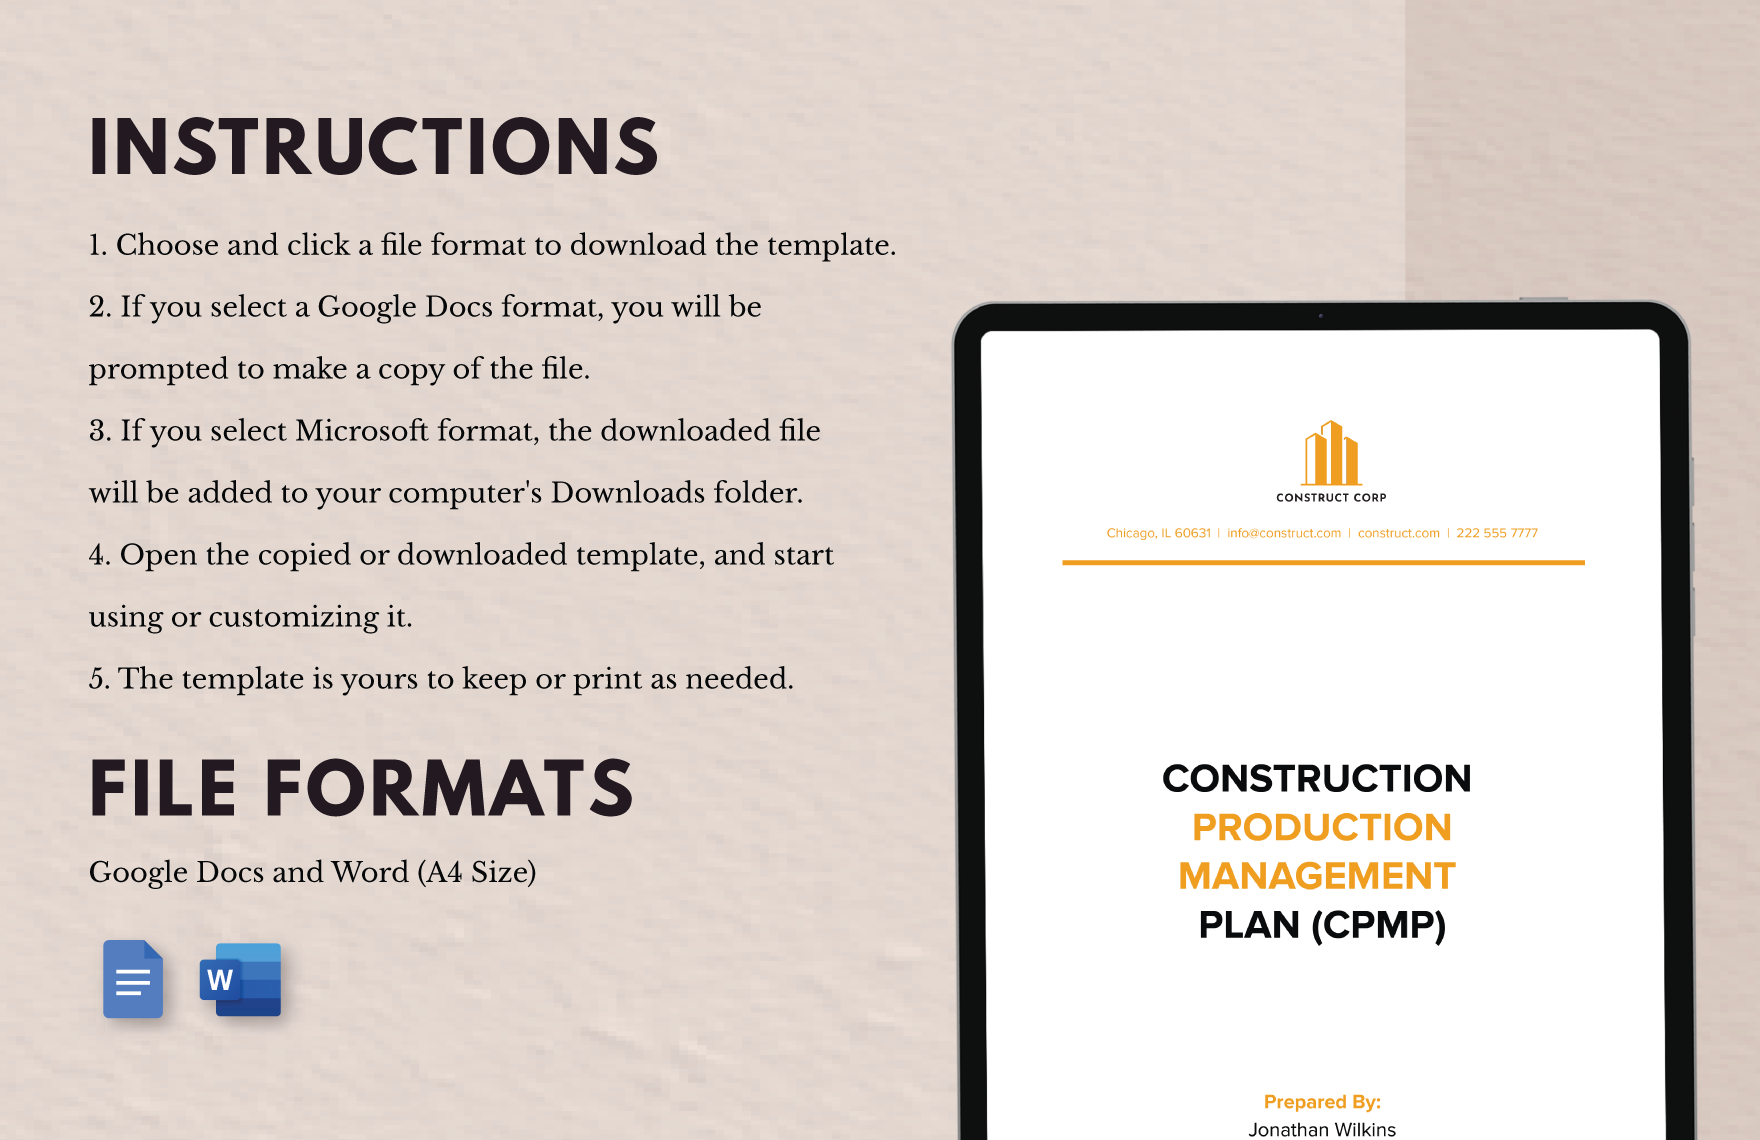 Construction Production Management Plan (CPMP)